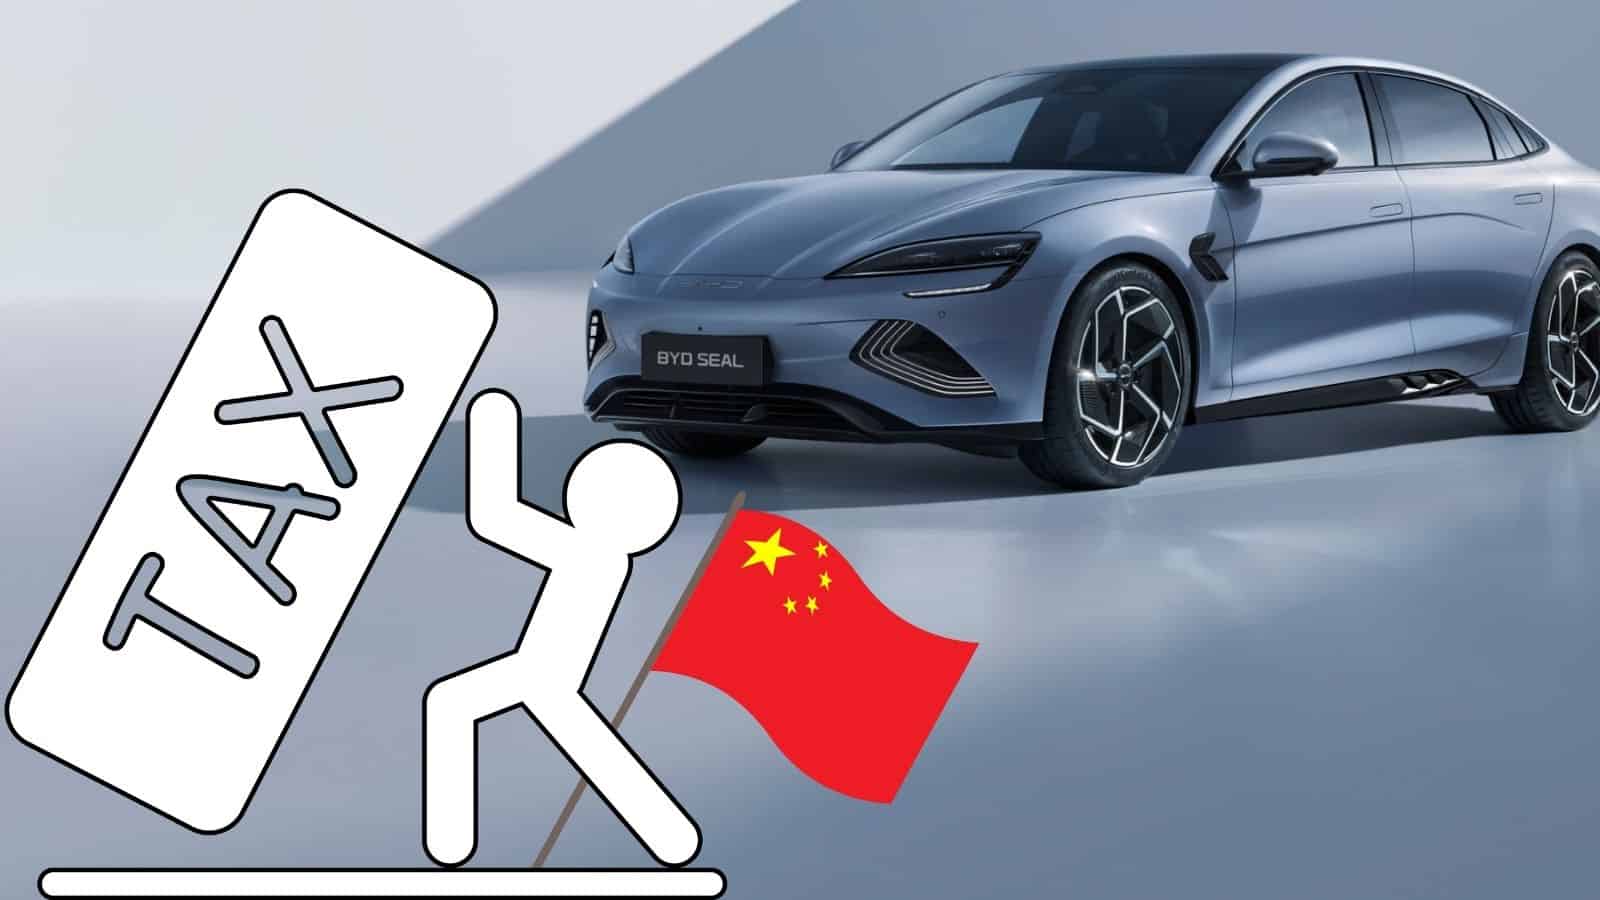 Dazi sulle auto elettriche Made in China: l'UE cerca una soluzione